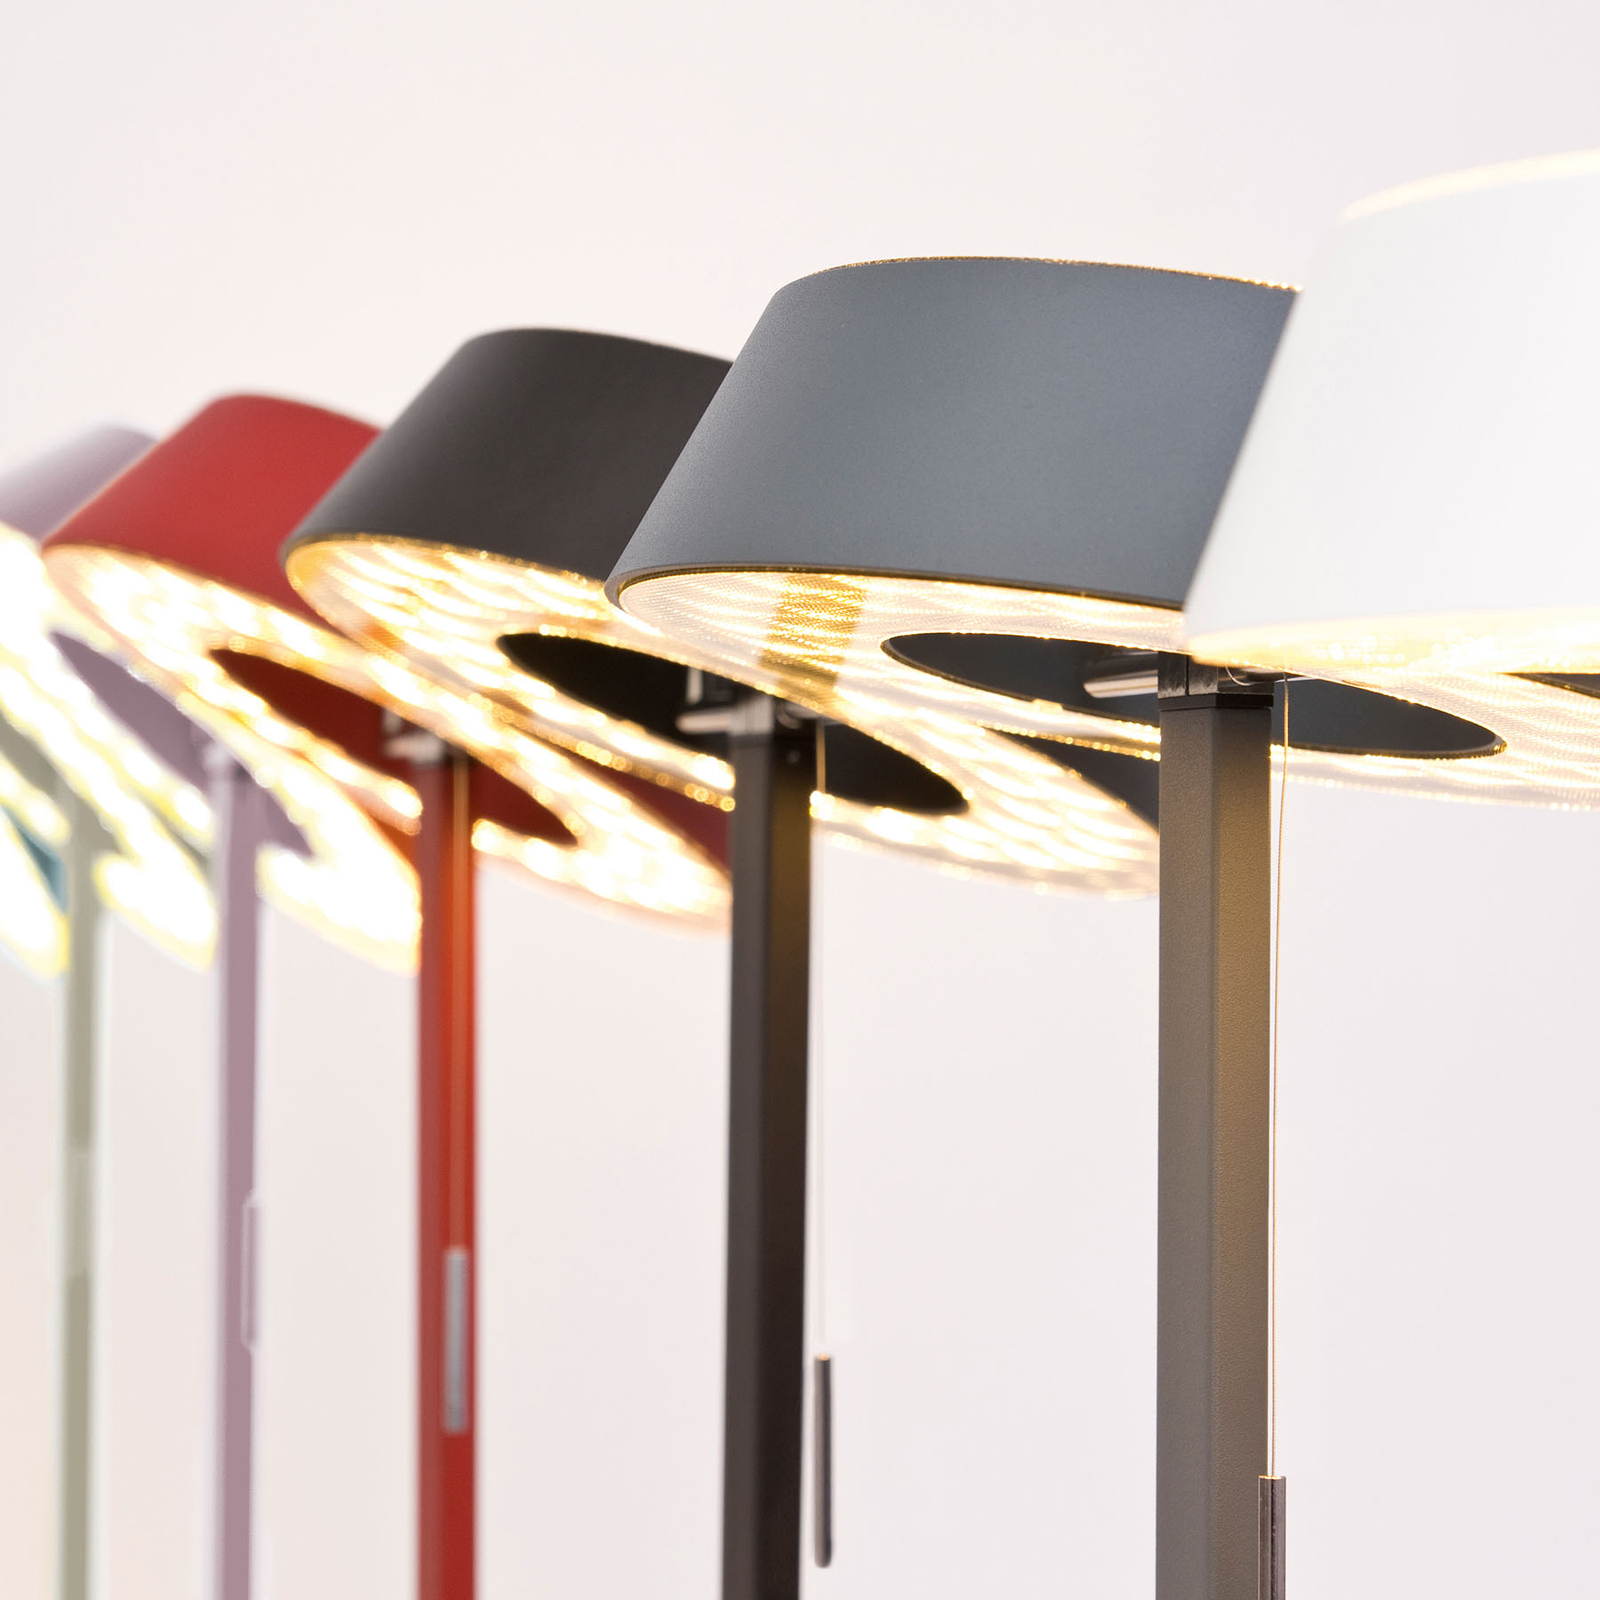 OLIGO Glance LED-pöytälamppu, matta harmaa